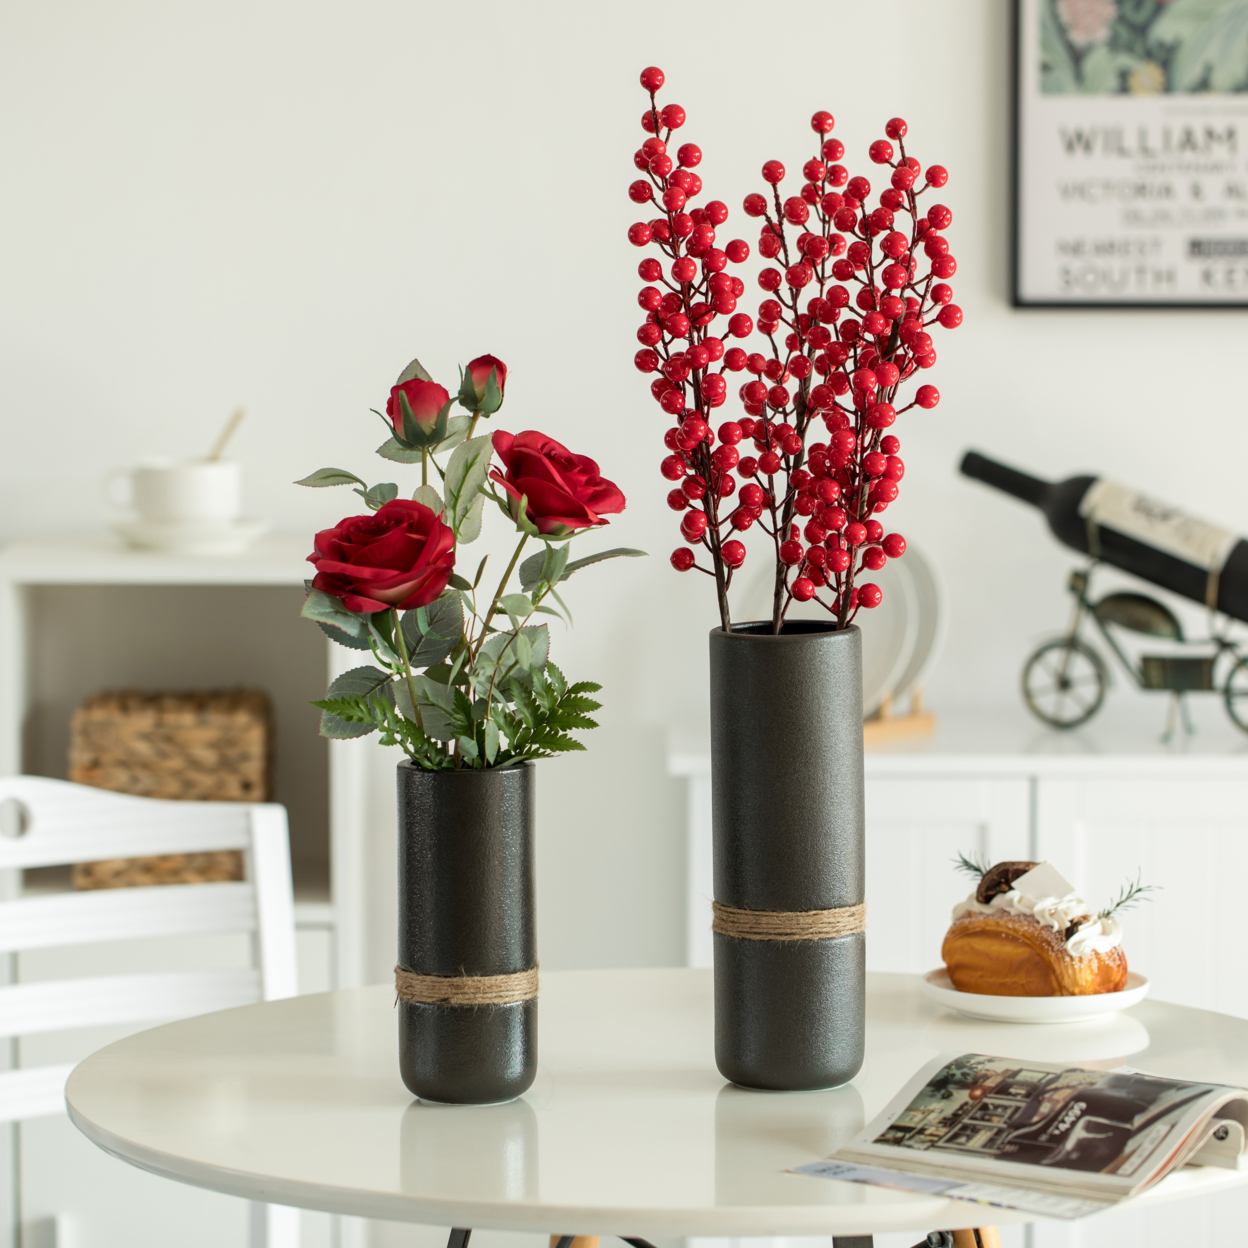 Decorative Modern Ceramic Cylinder Shape Table Vase Flower Holder With Rope - Large Black